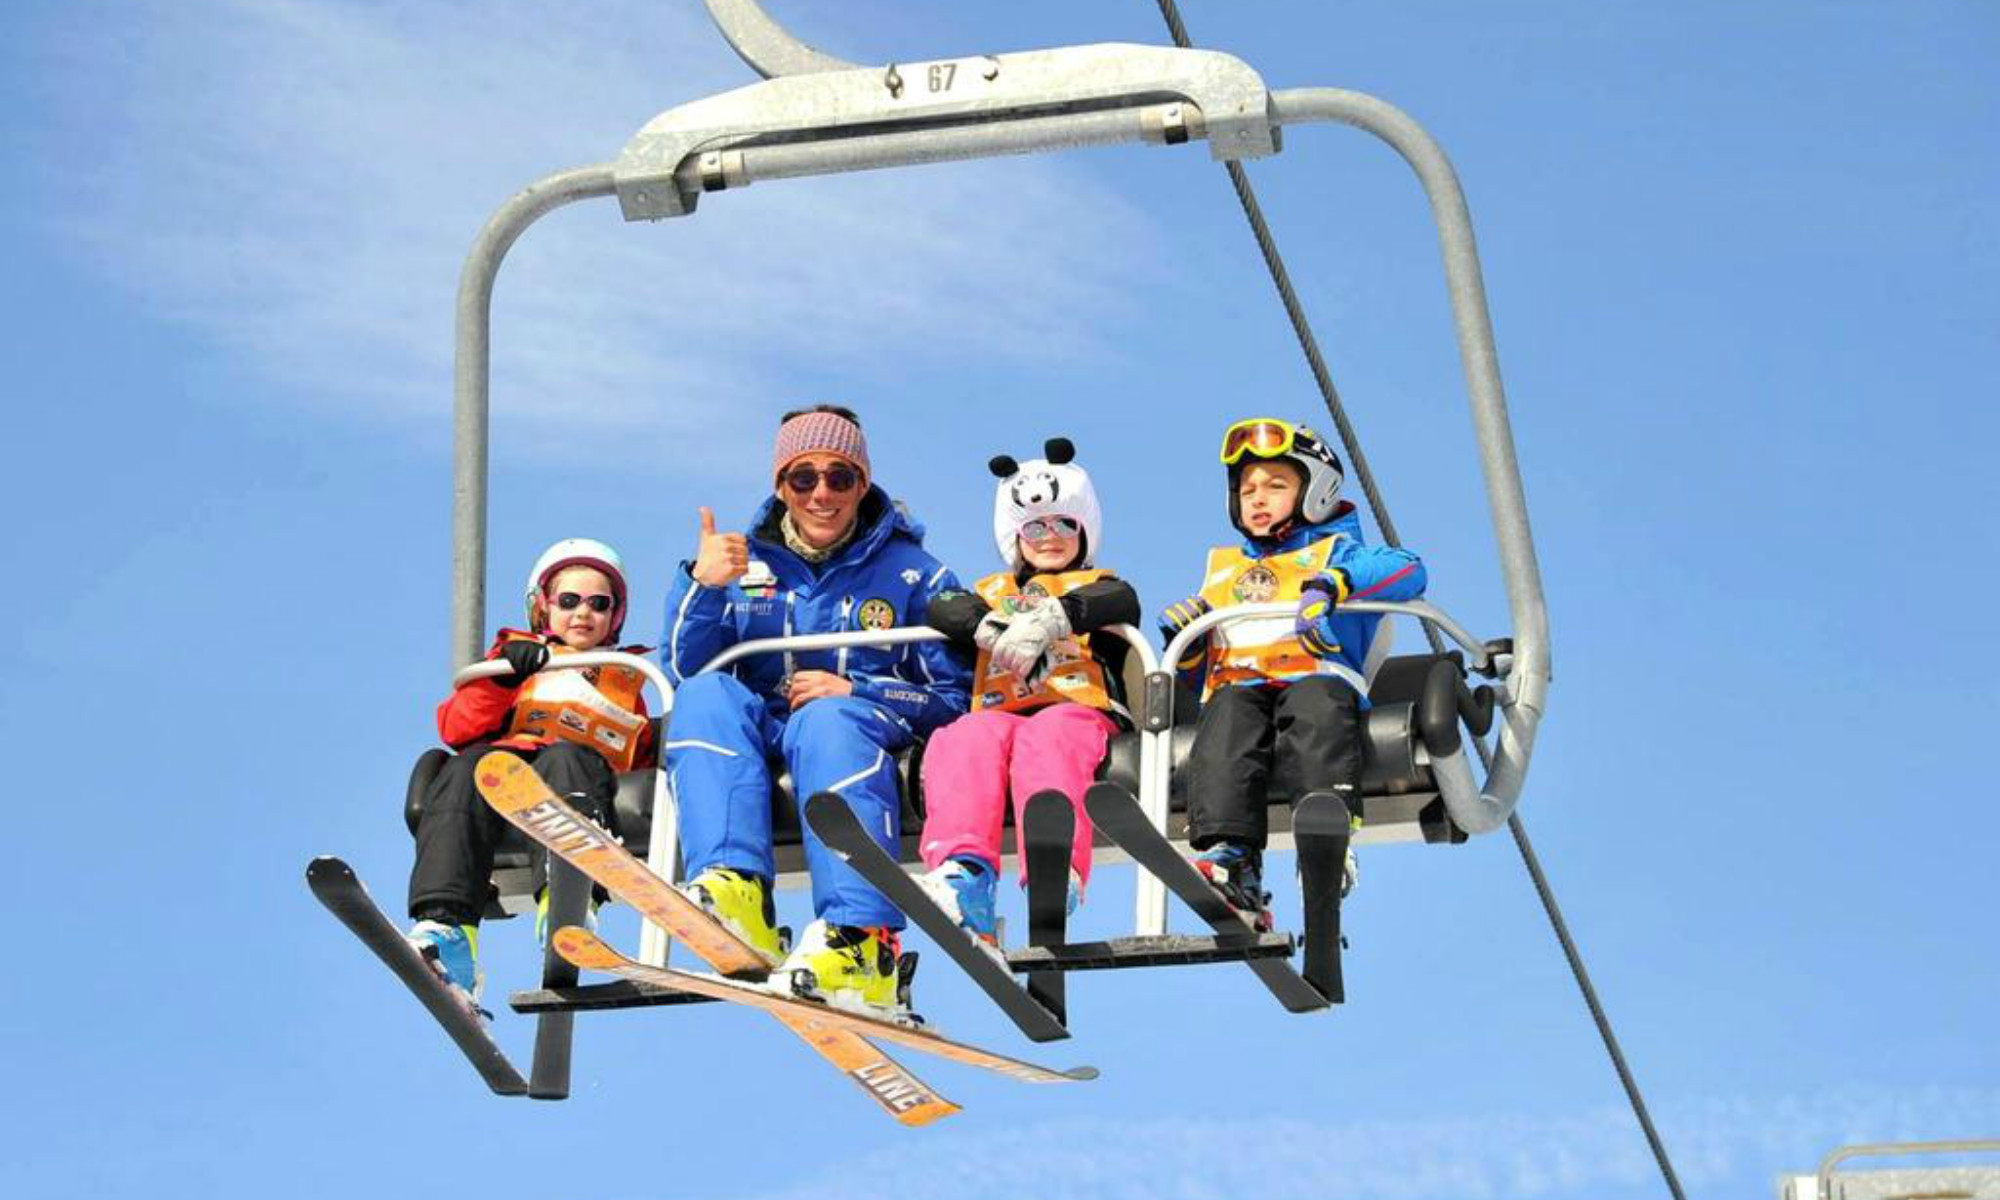 Un istruttore di sci e 3 piccoli allievi sorridono verso la macchina fotografica mentre sono sullo skilift.